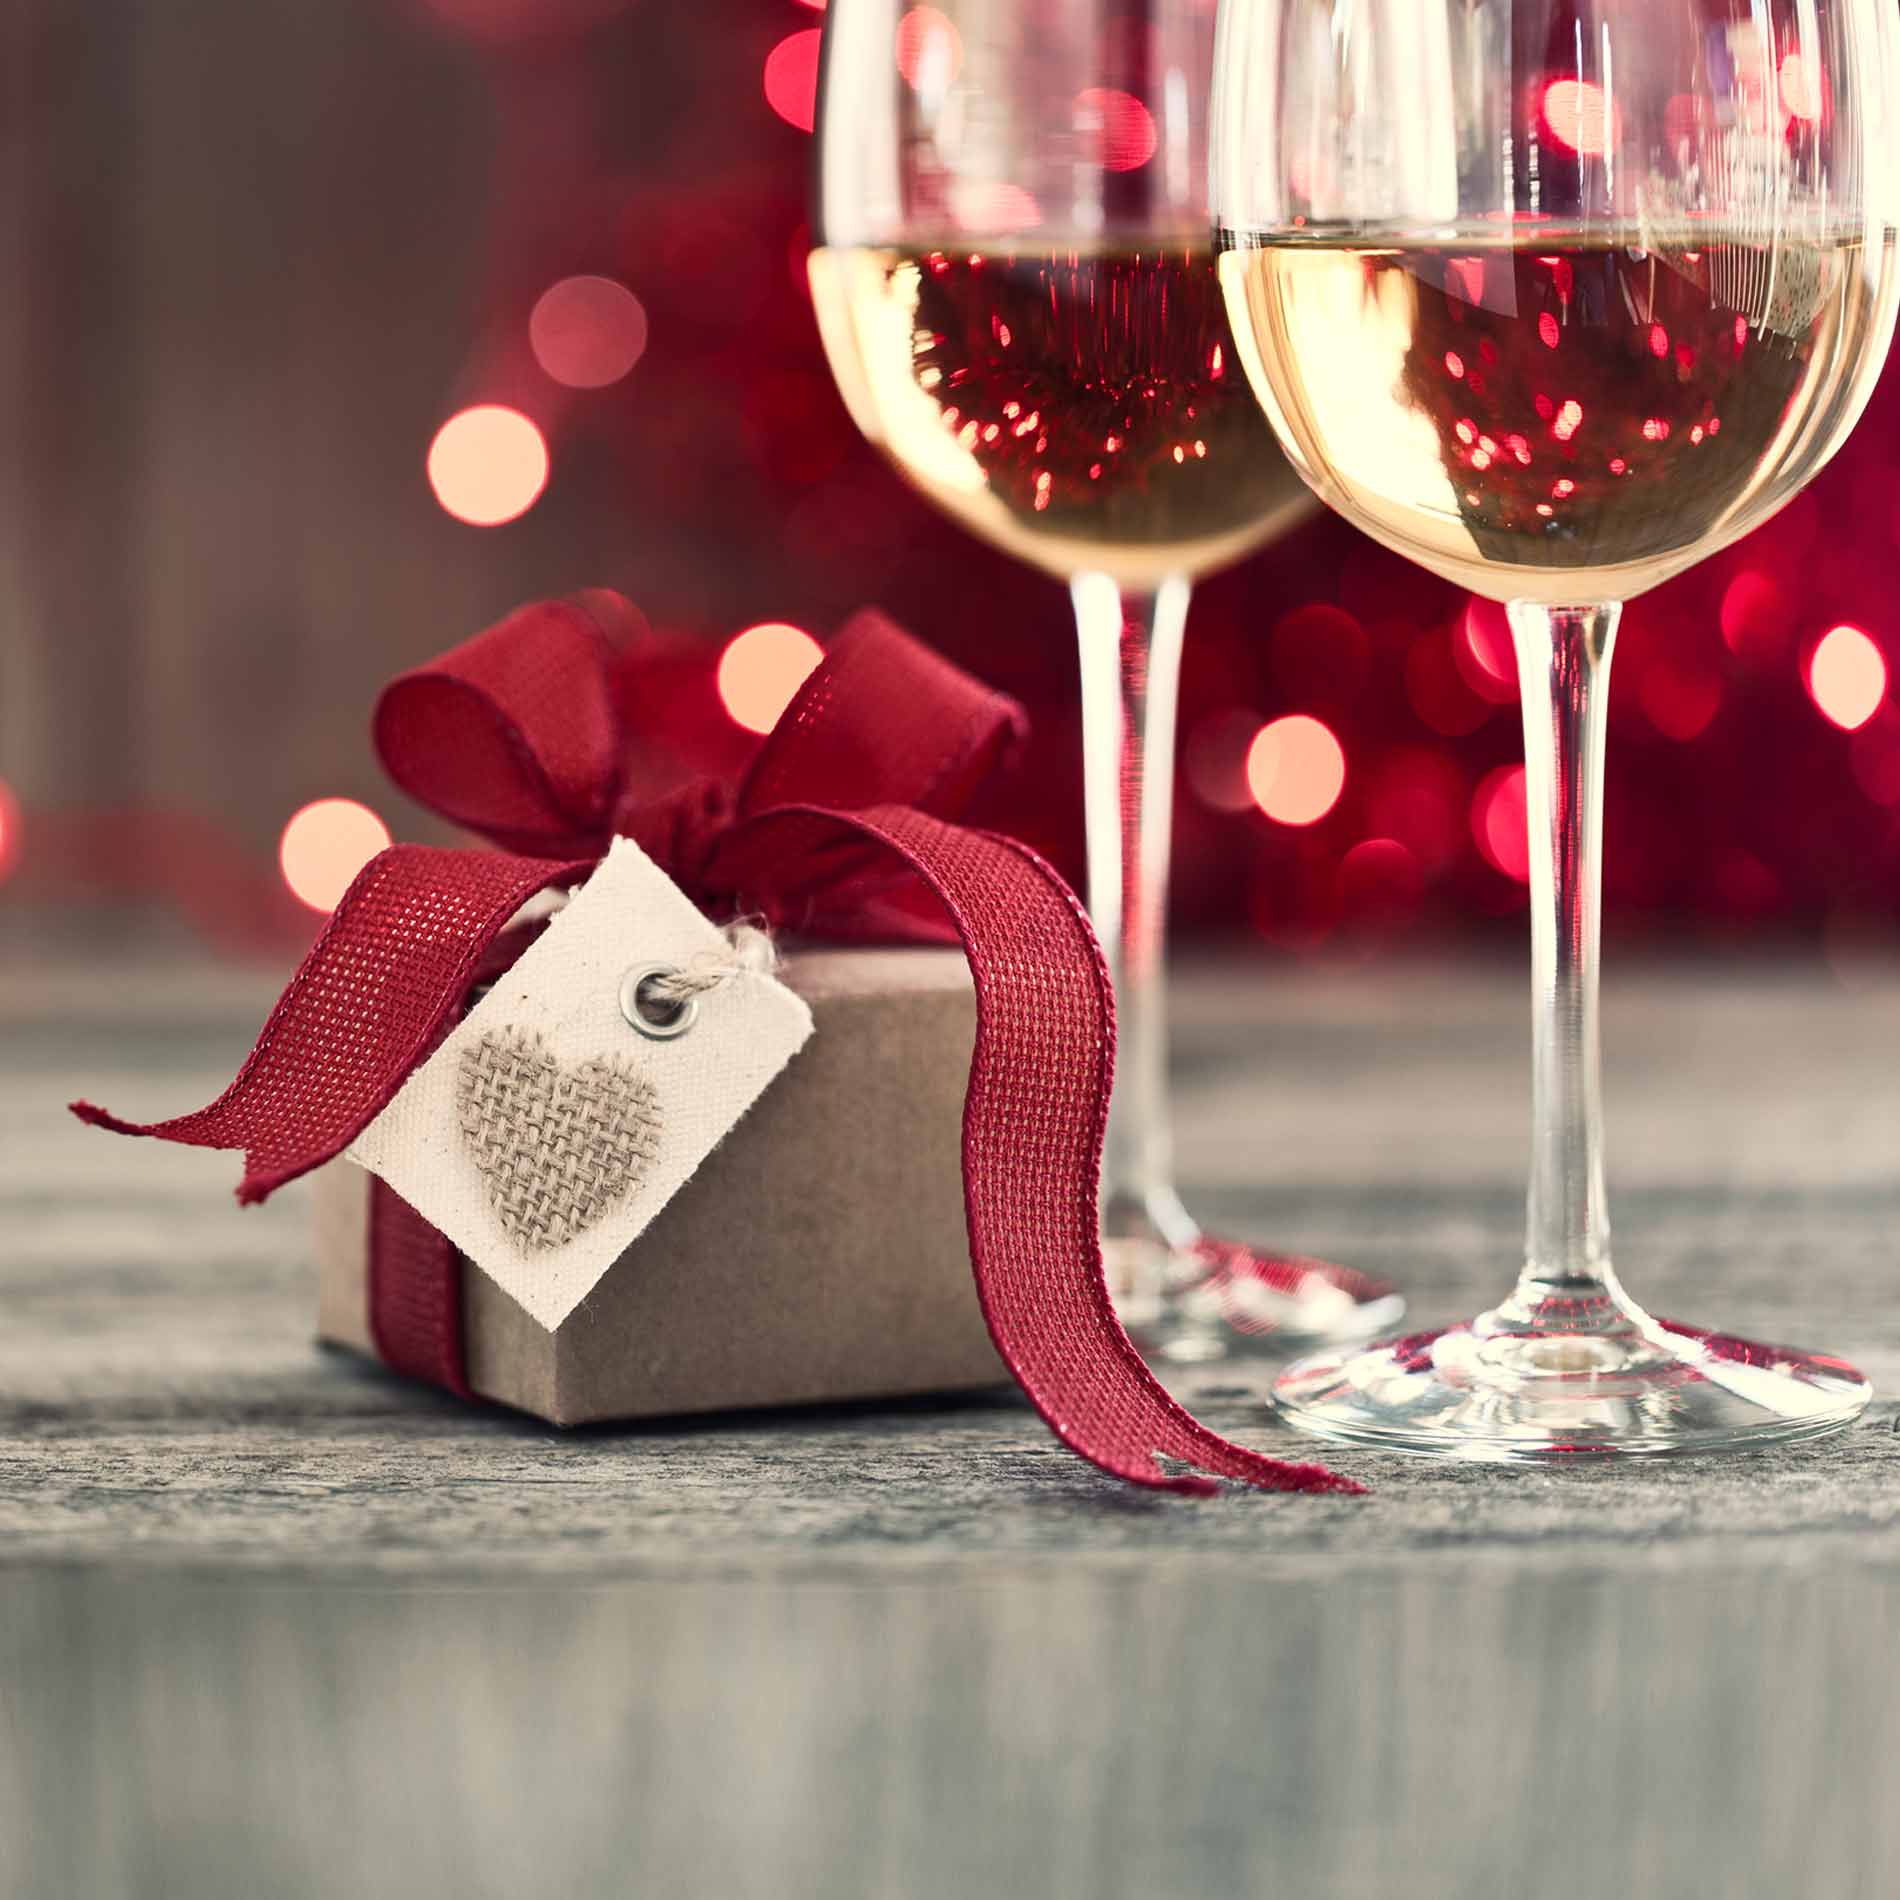 Weihnachtsgeschenke für Frauen – Top 5 ab 10 Euro